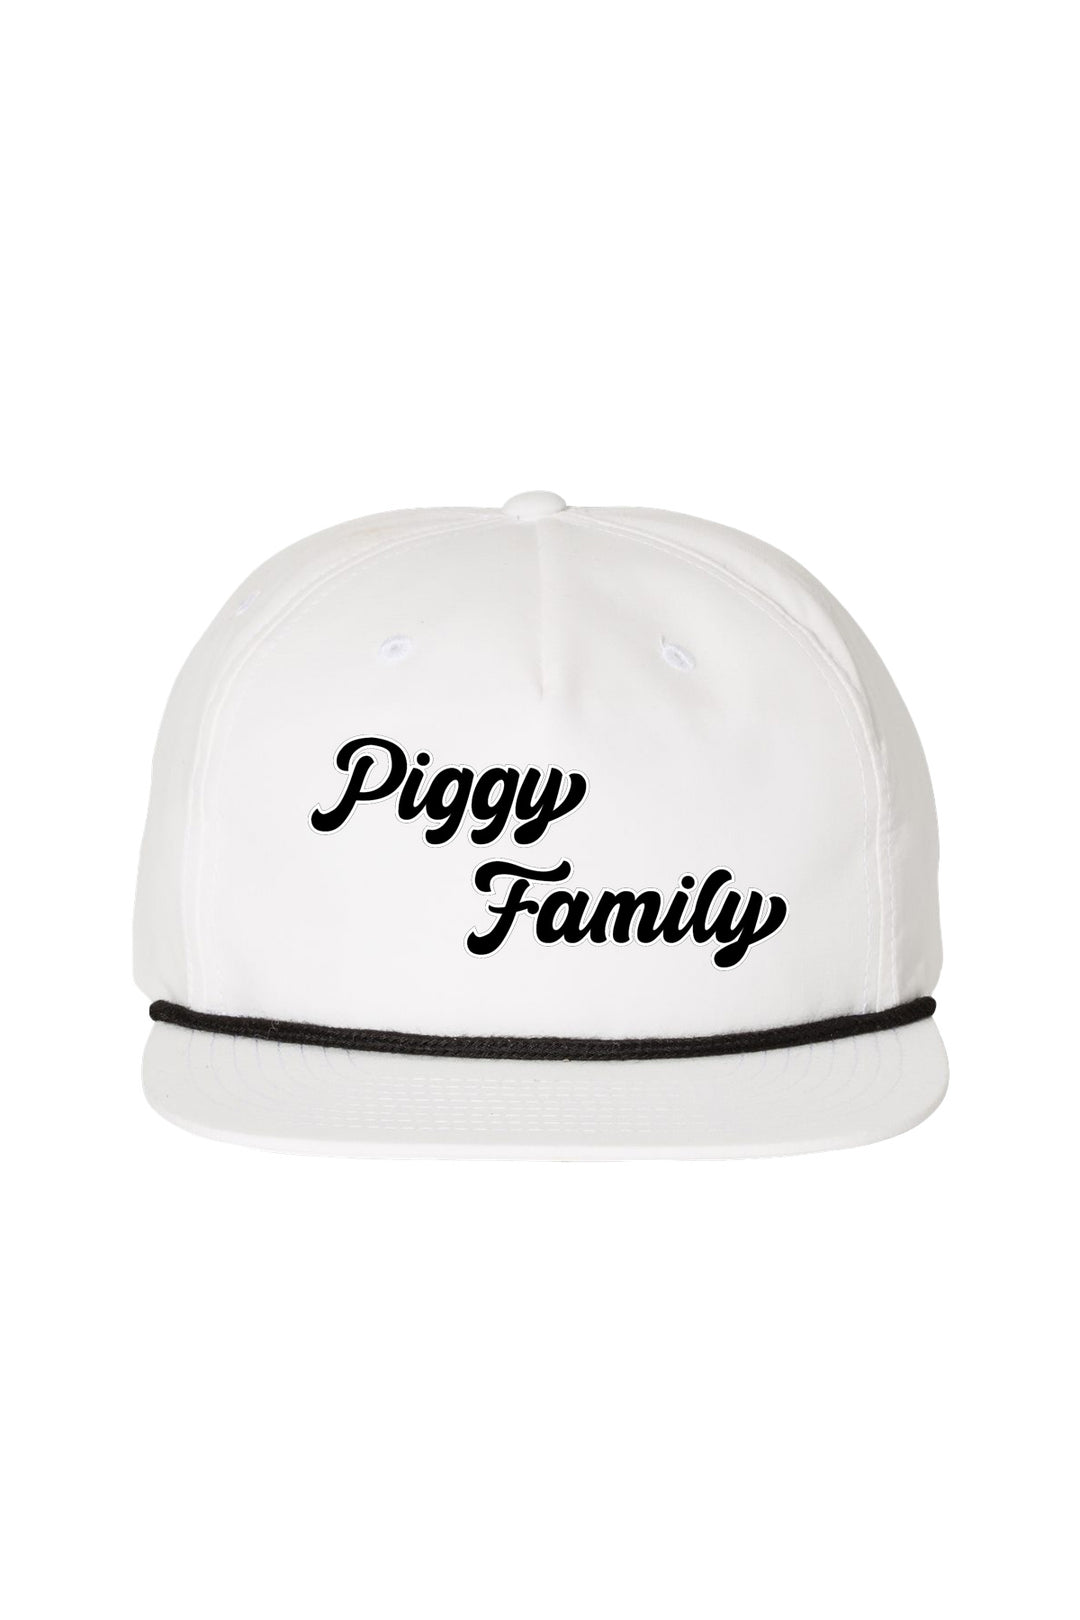 Piggy Family